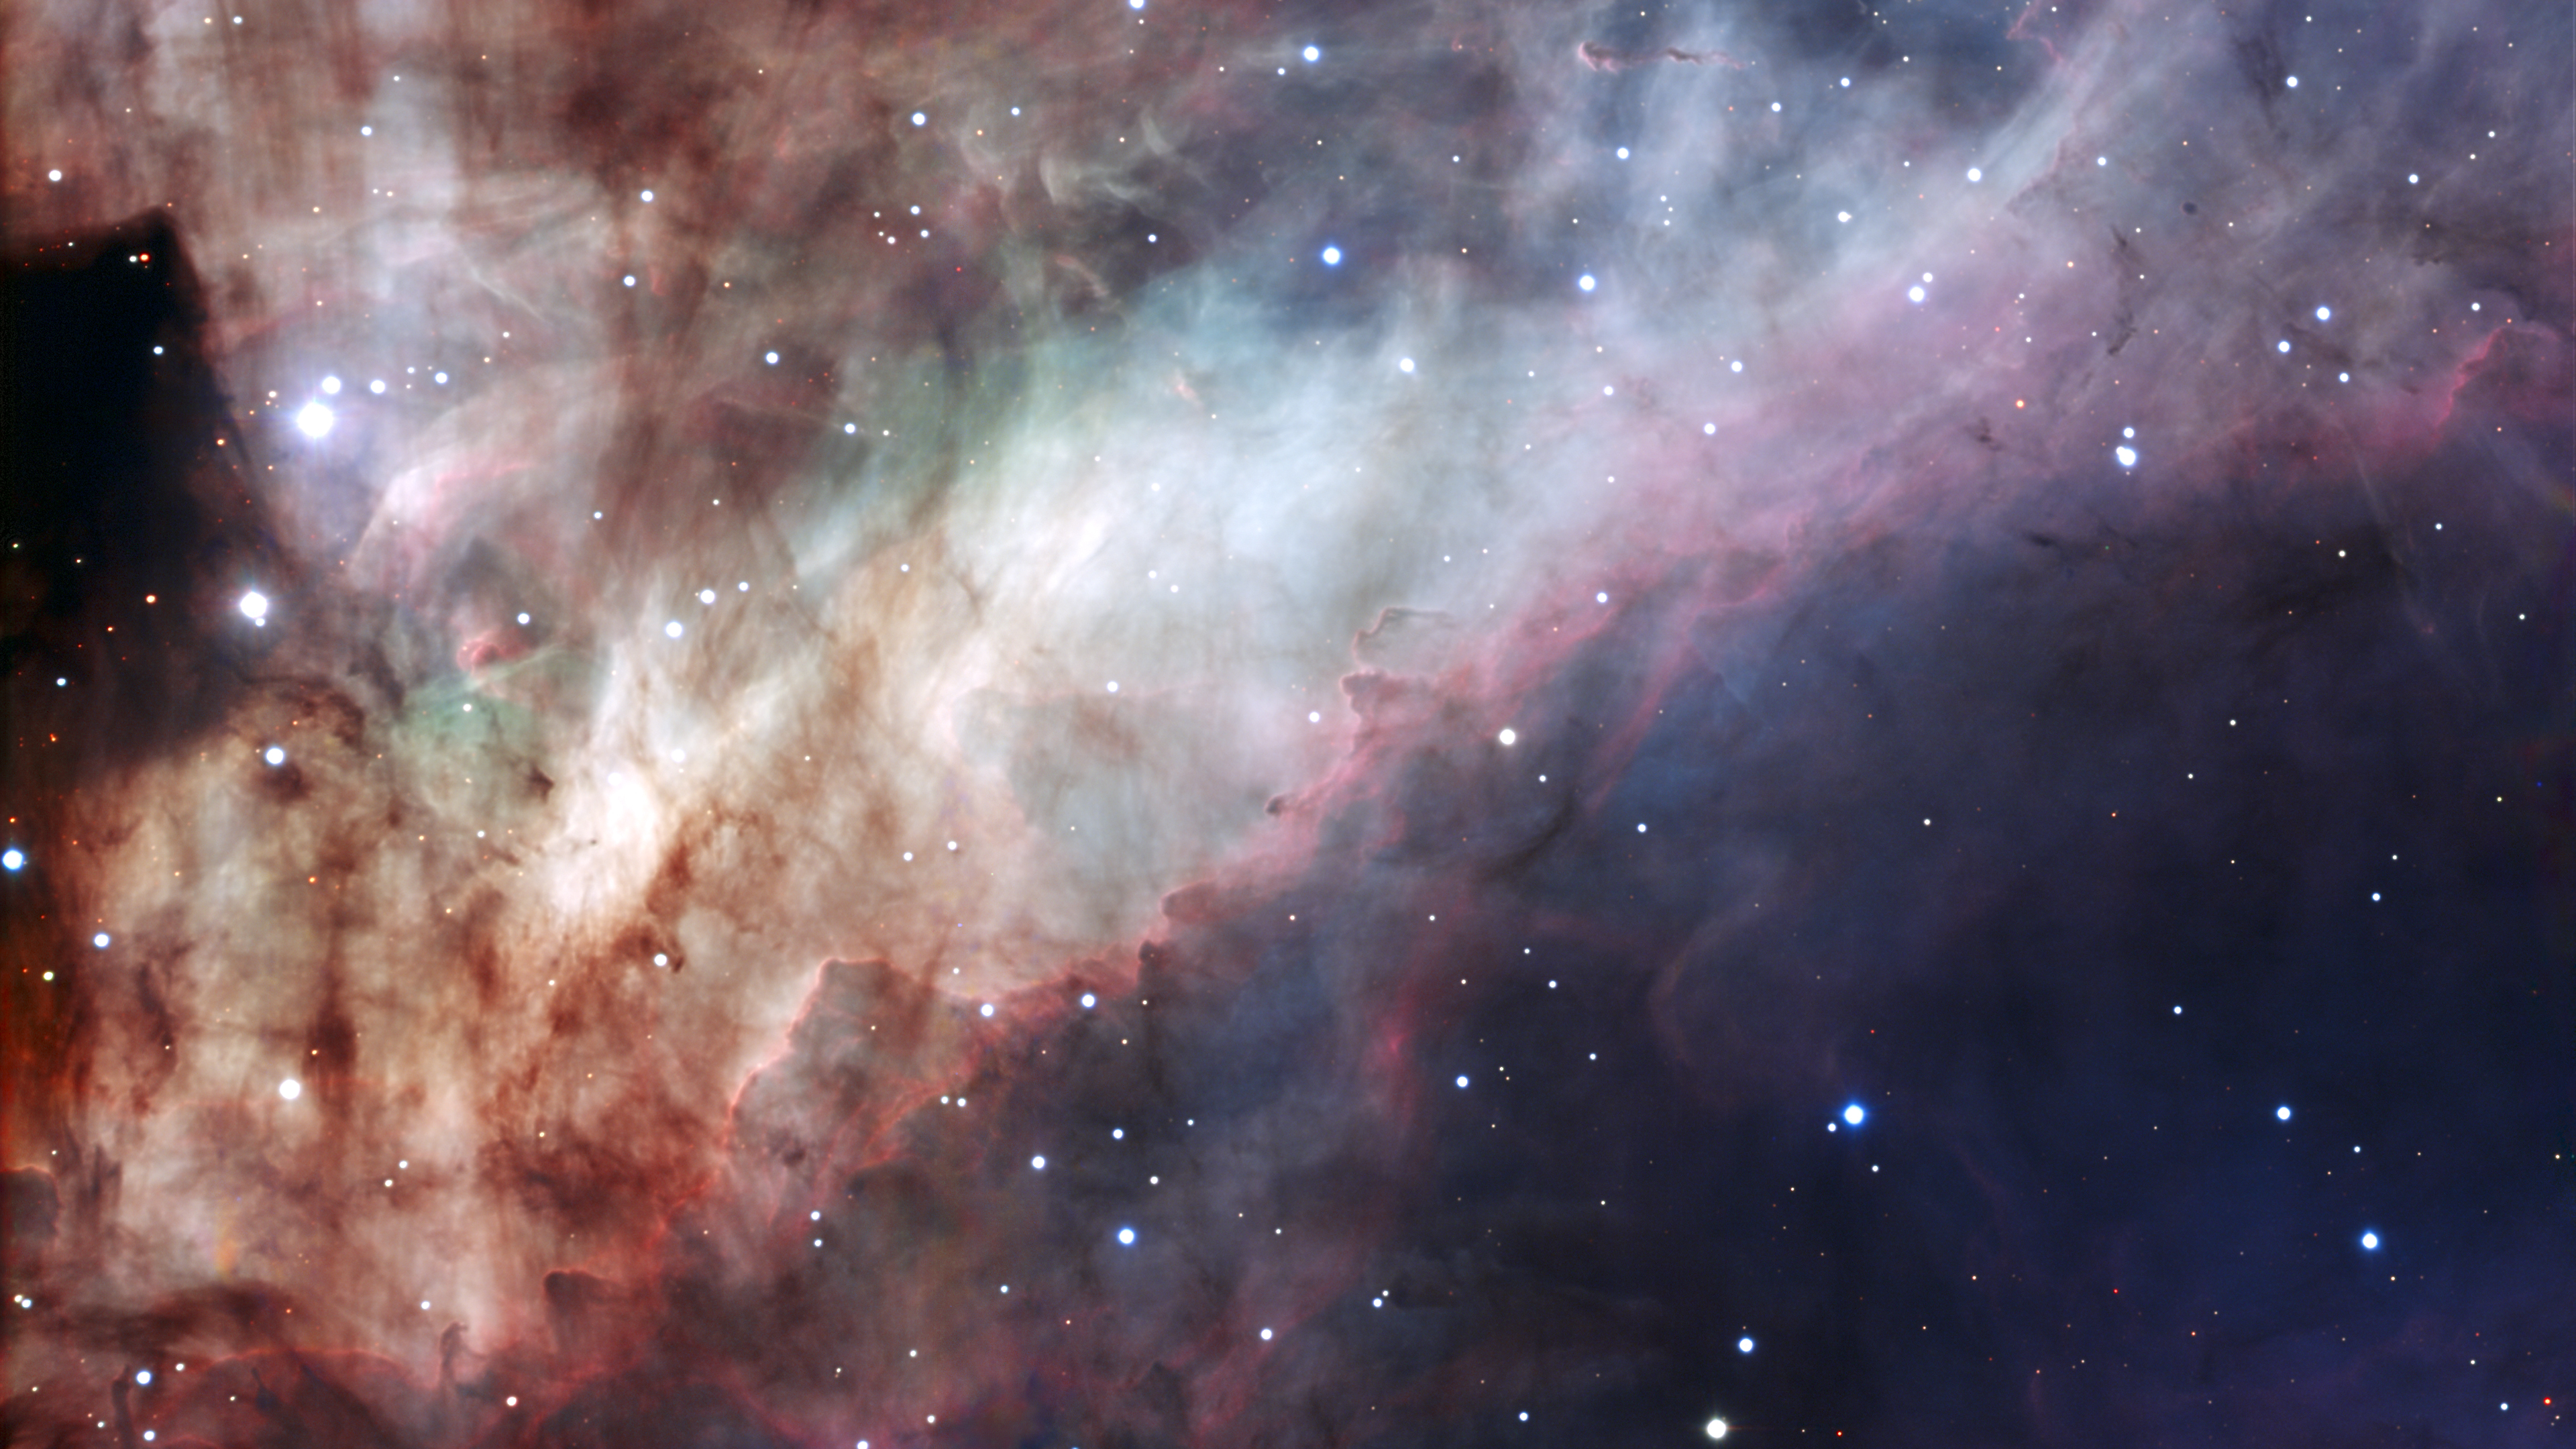 The Omega Nebula 4К wallpaper, 3840х2160